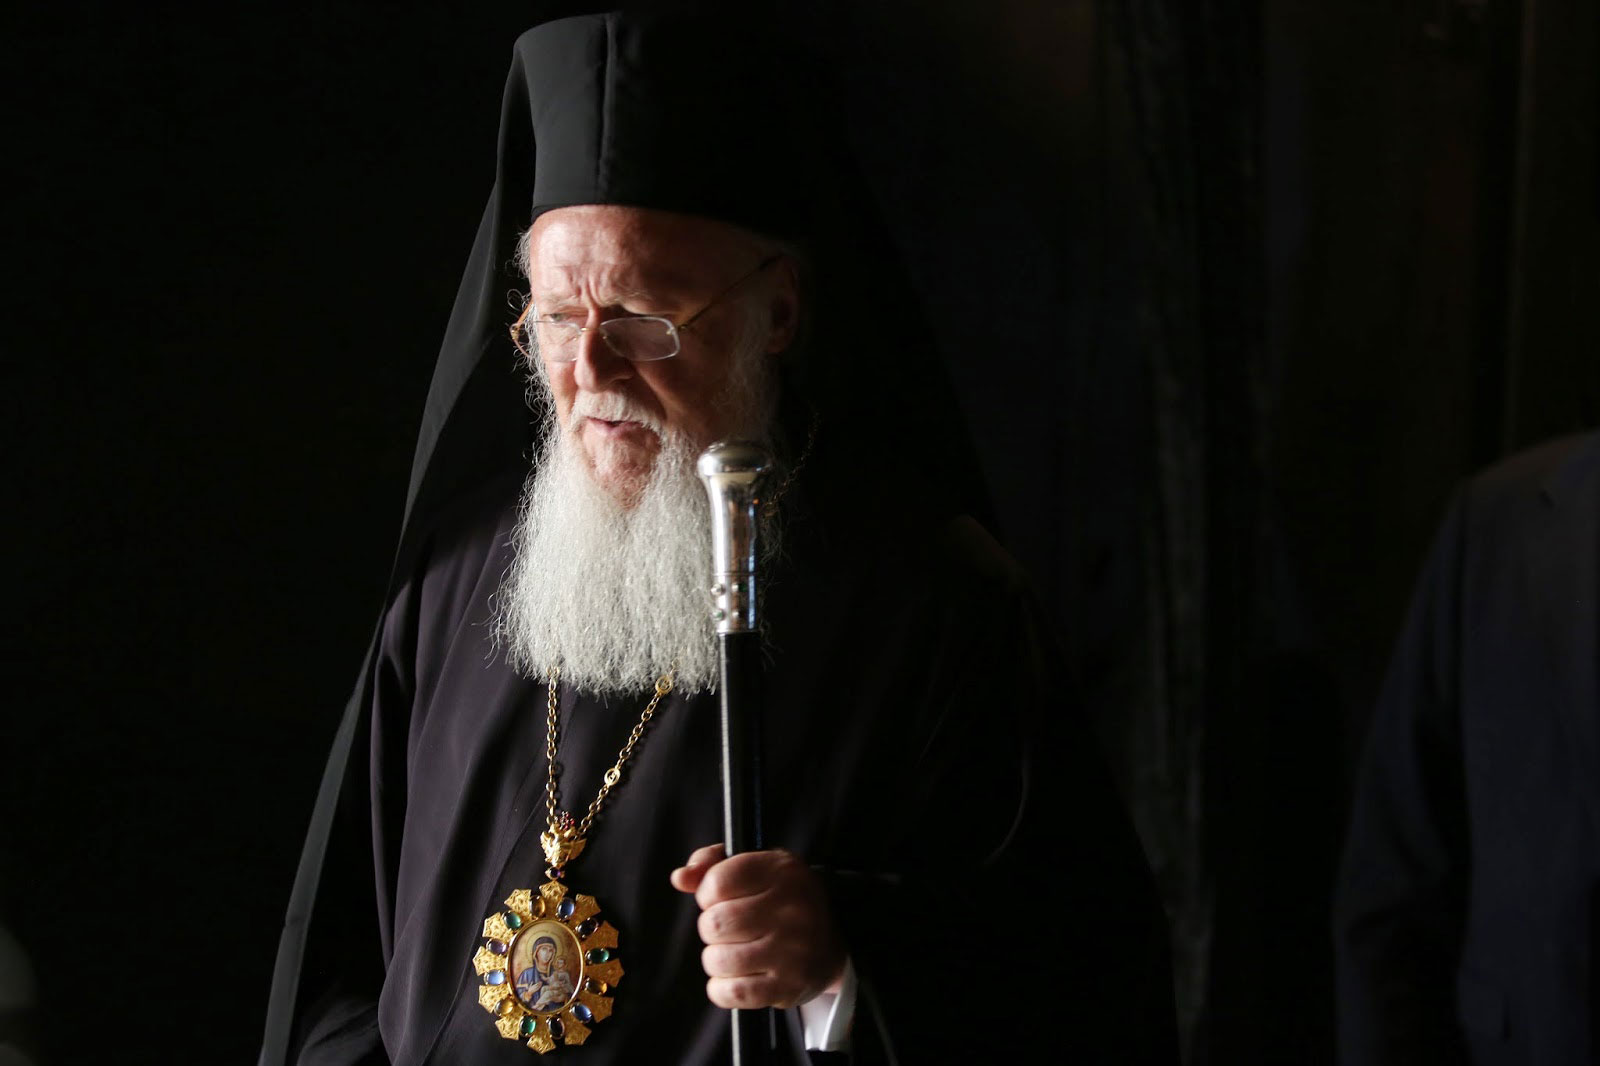 Speech of Ecumenical Patriarch Bartholomew I of Constantinople at Yad Vashem